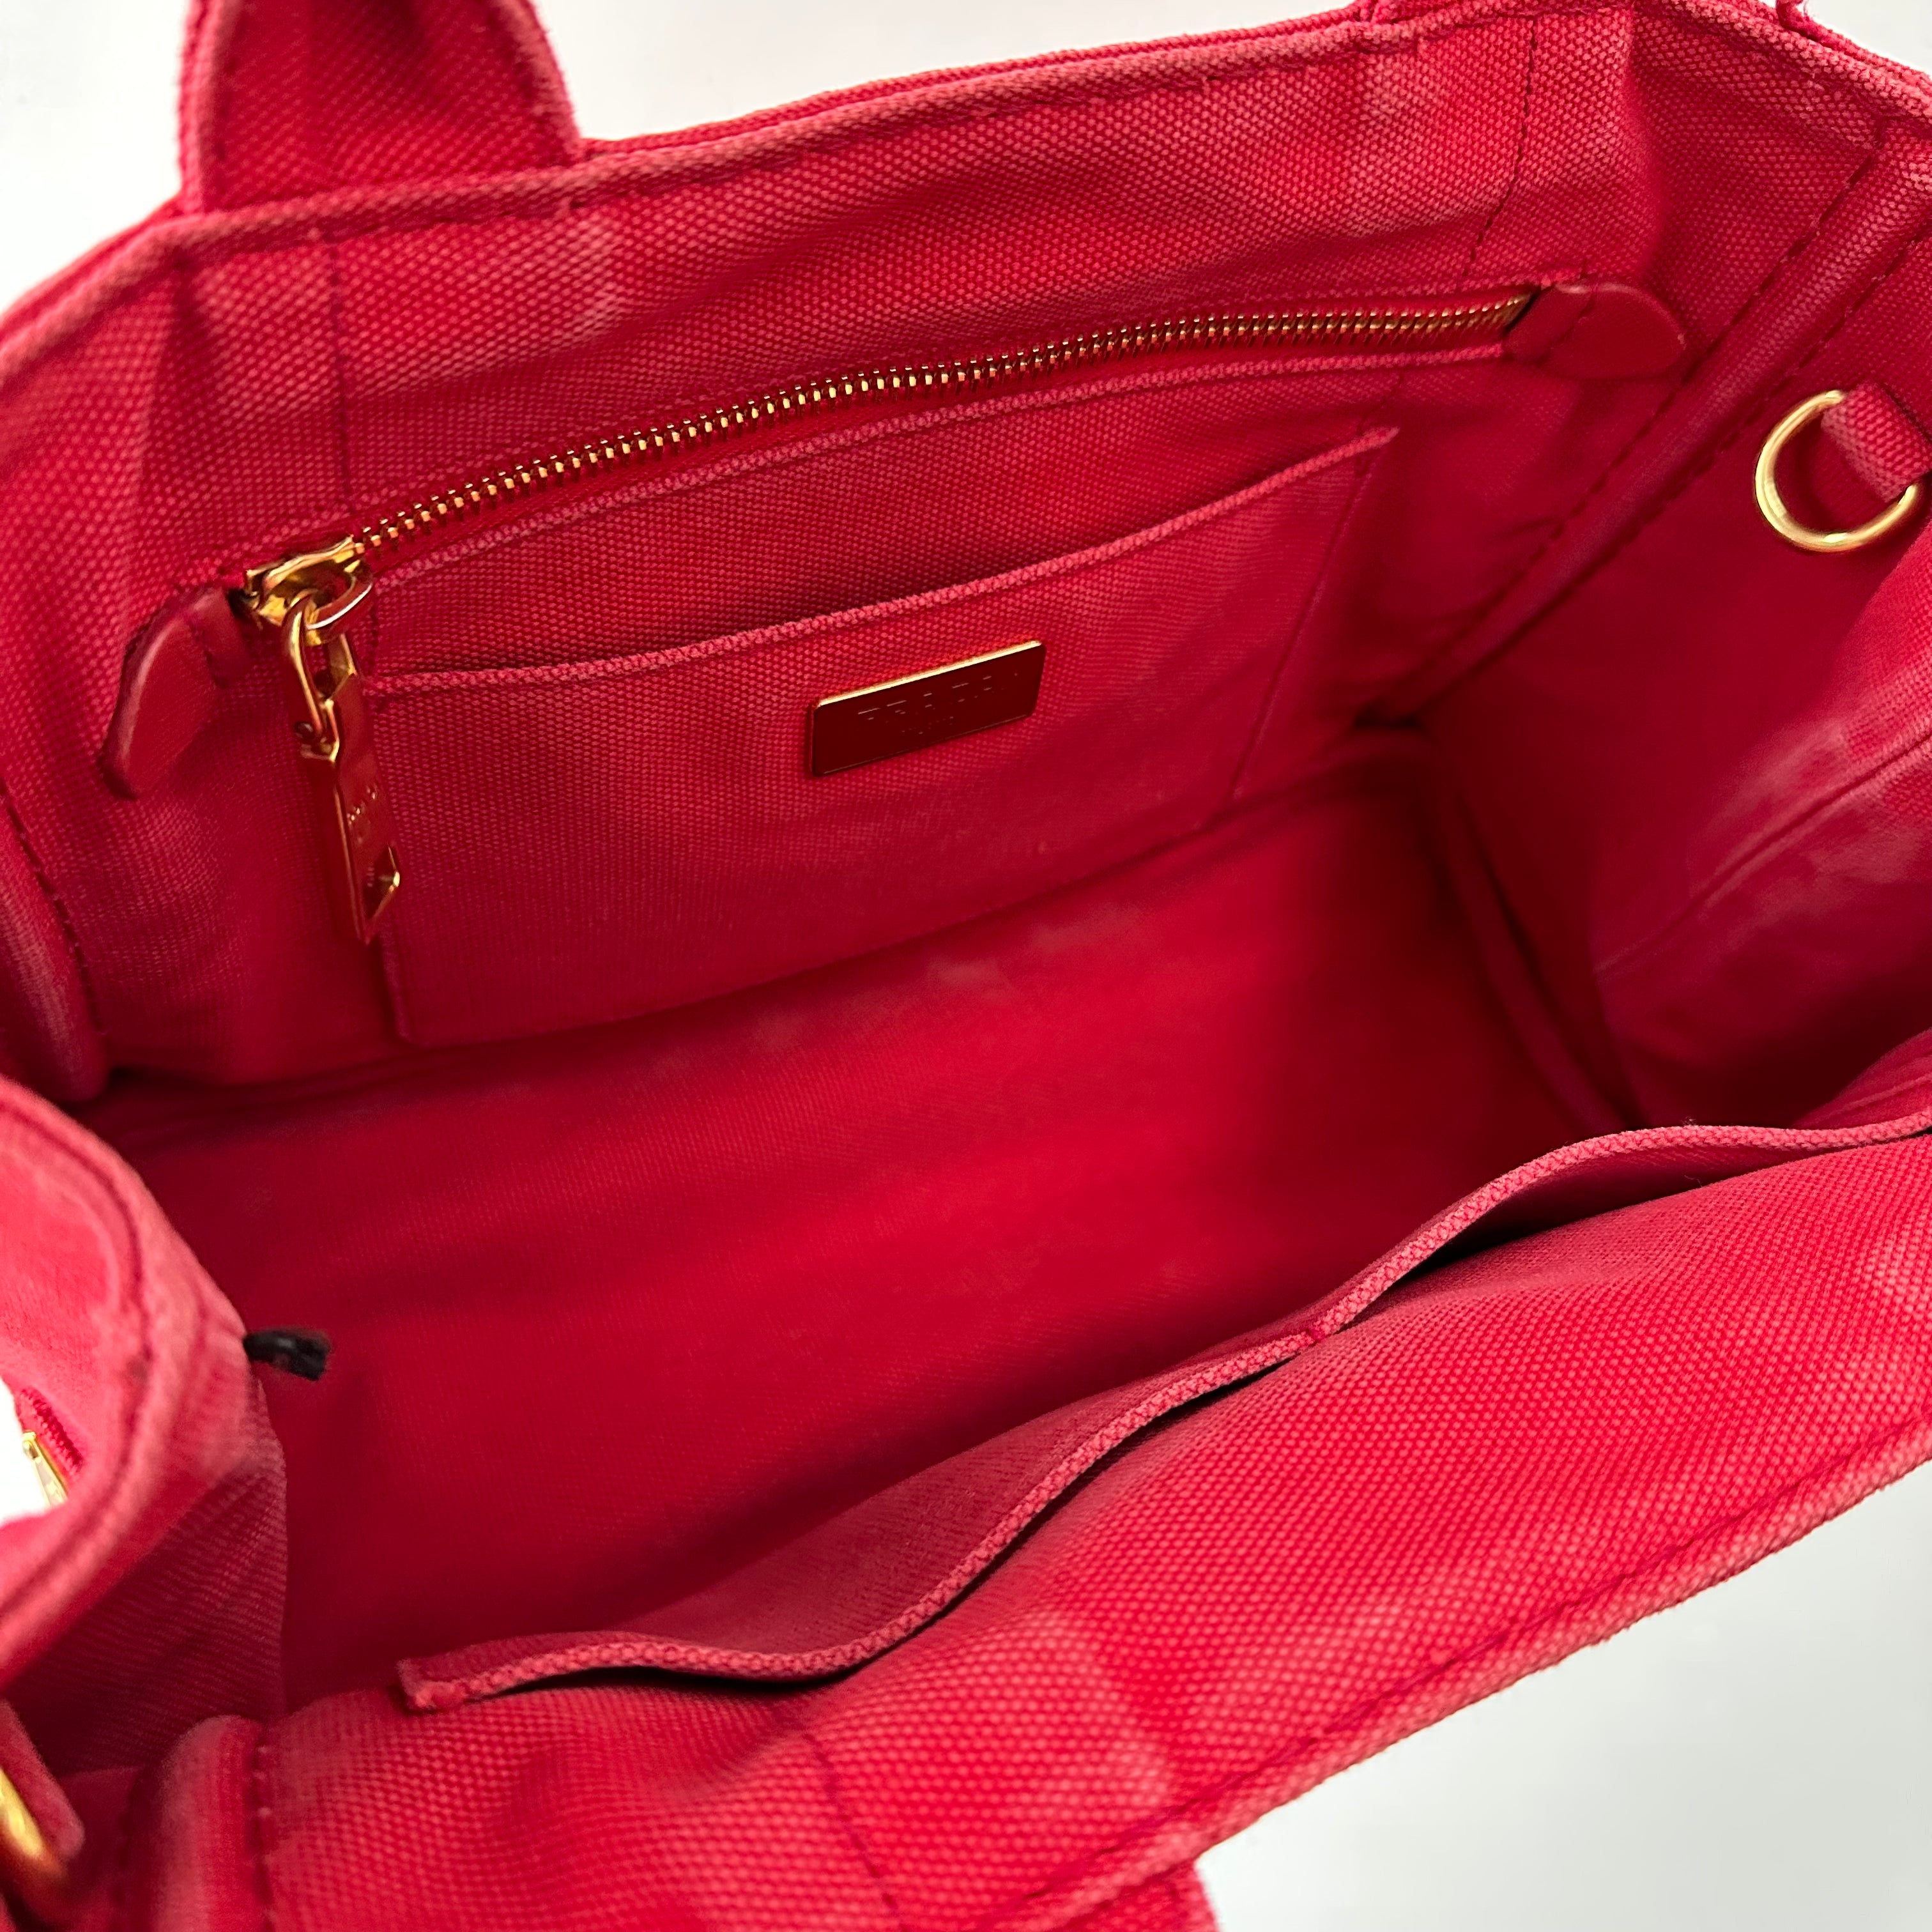 Prada Red Canapa Tote Bag